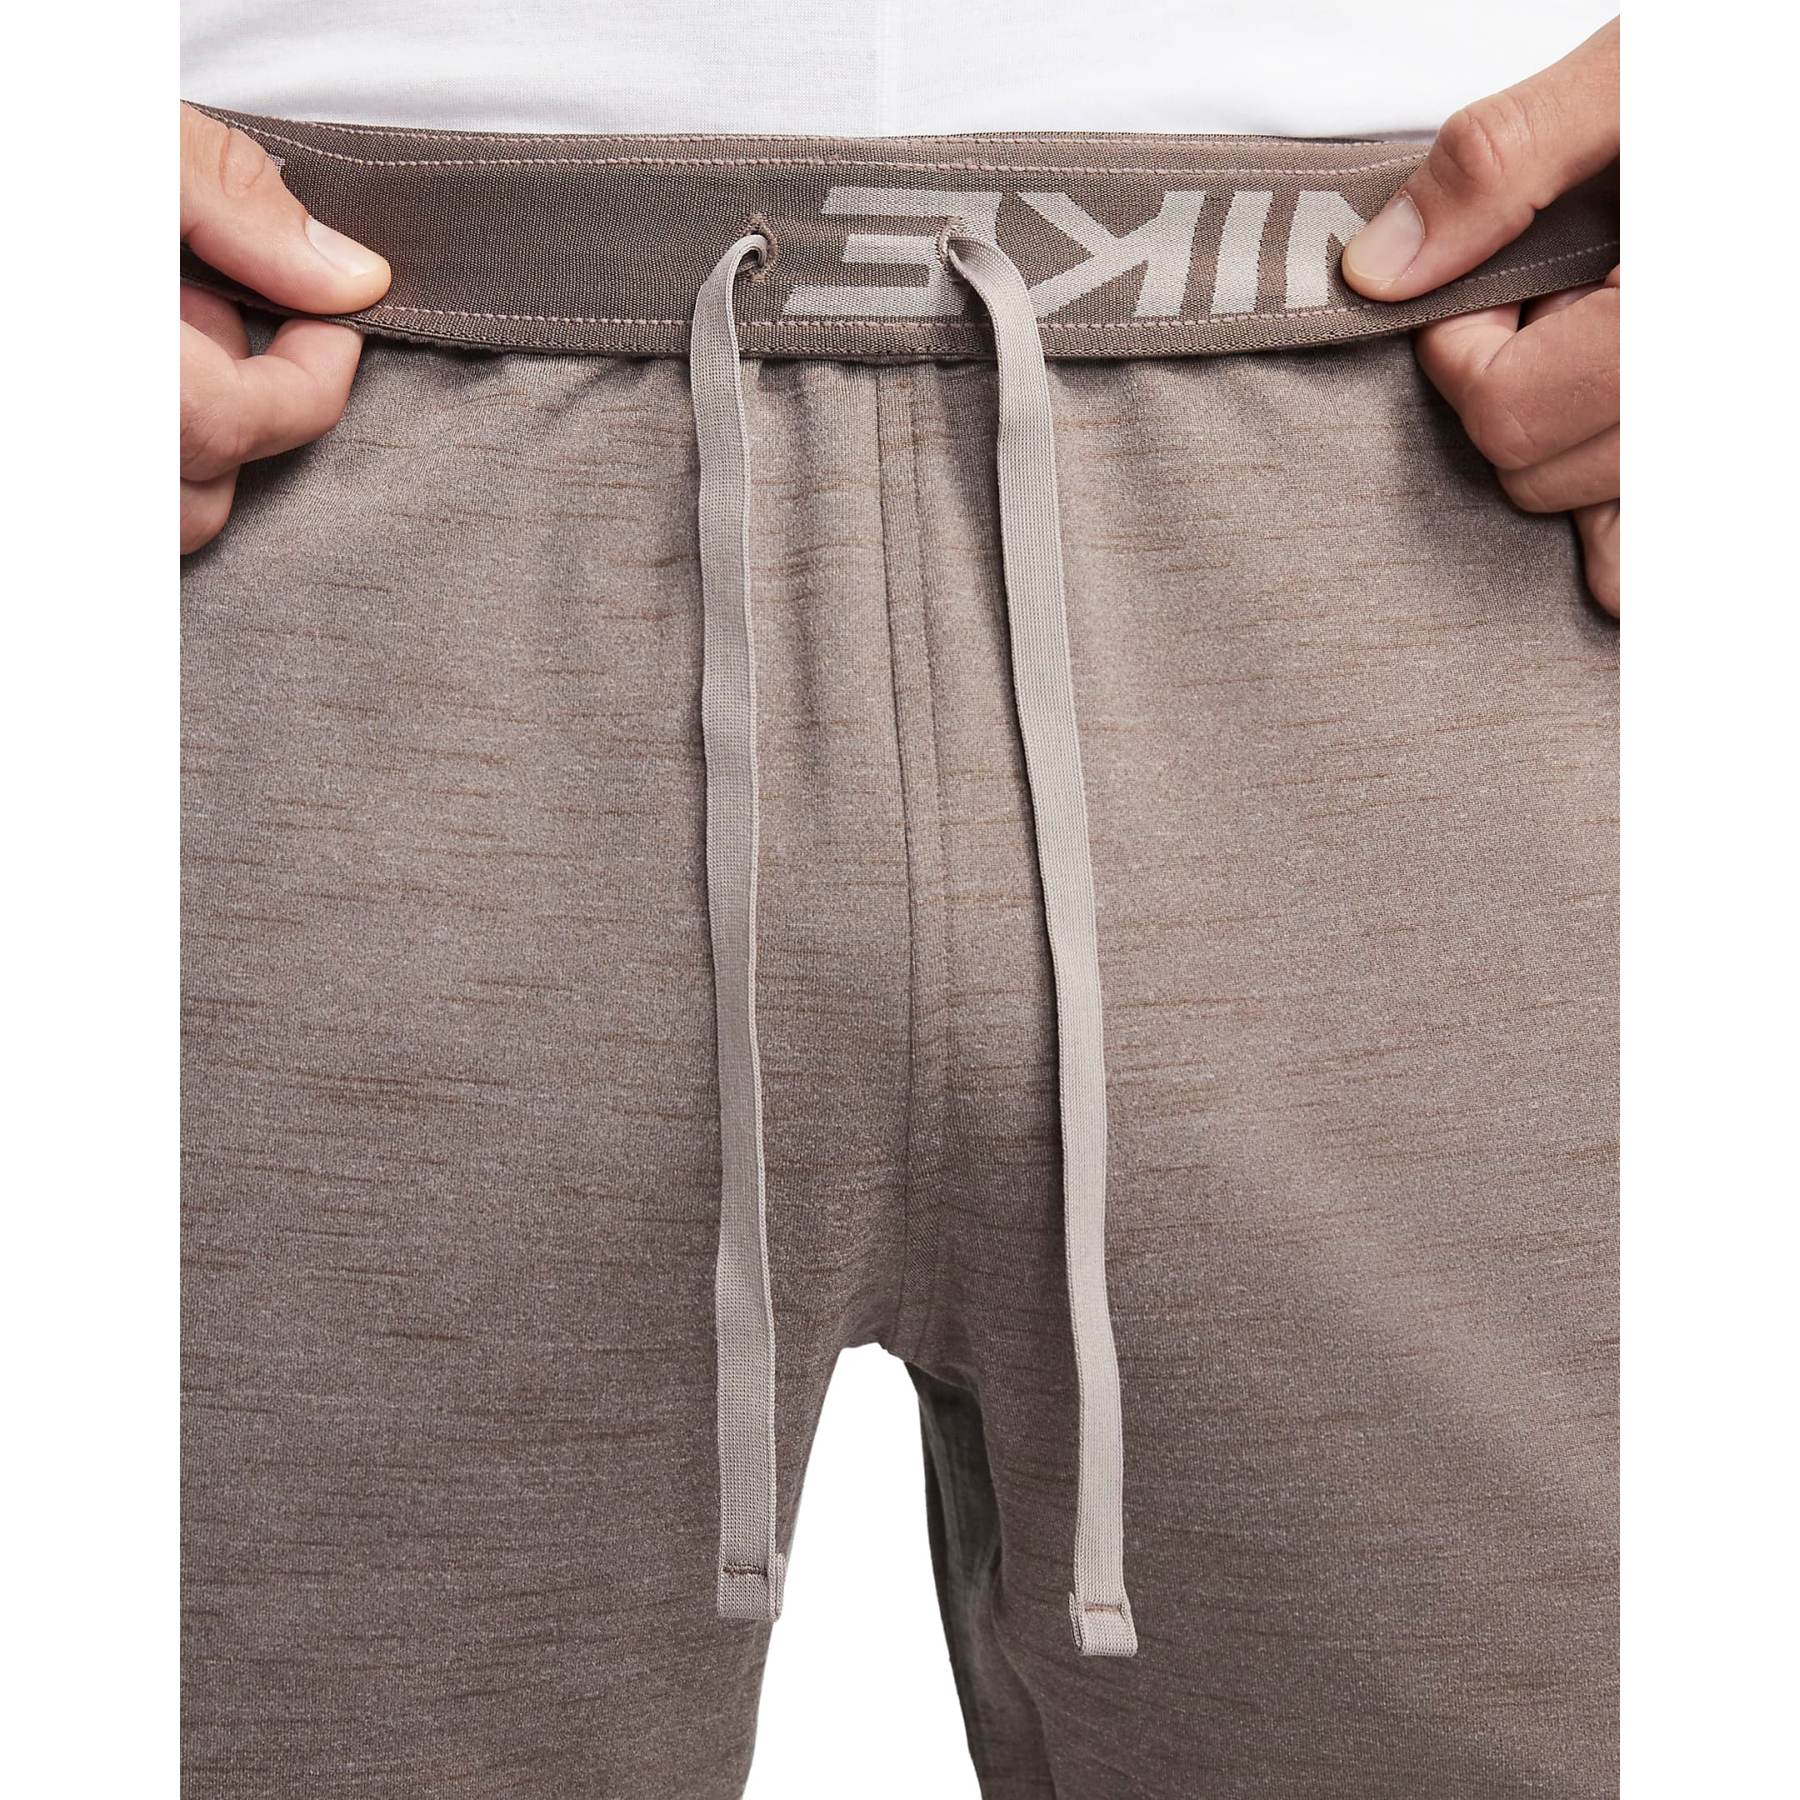 Nike Yoga Dri-Fit Pants Men - moon fossil/ironstone/black CZ2208-087